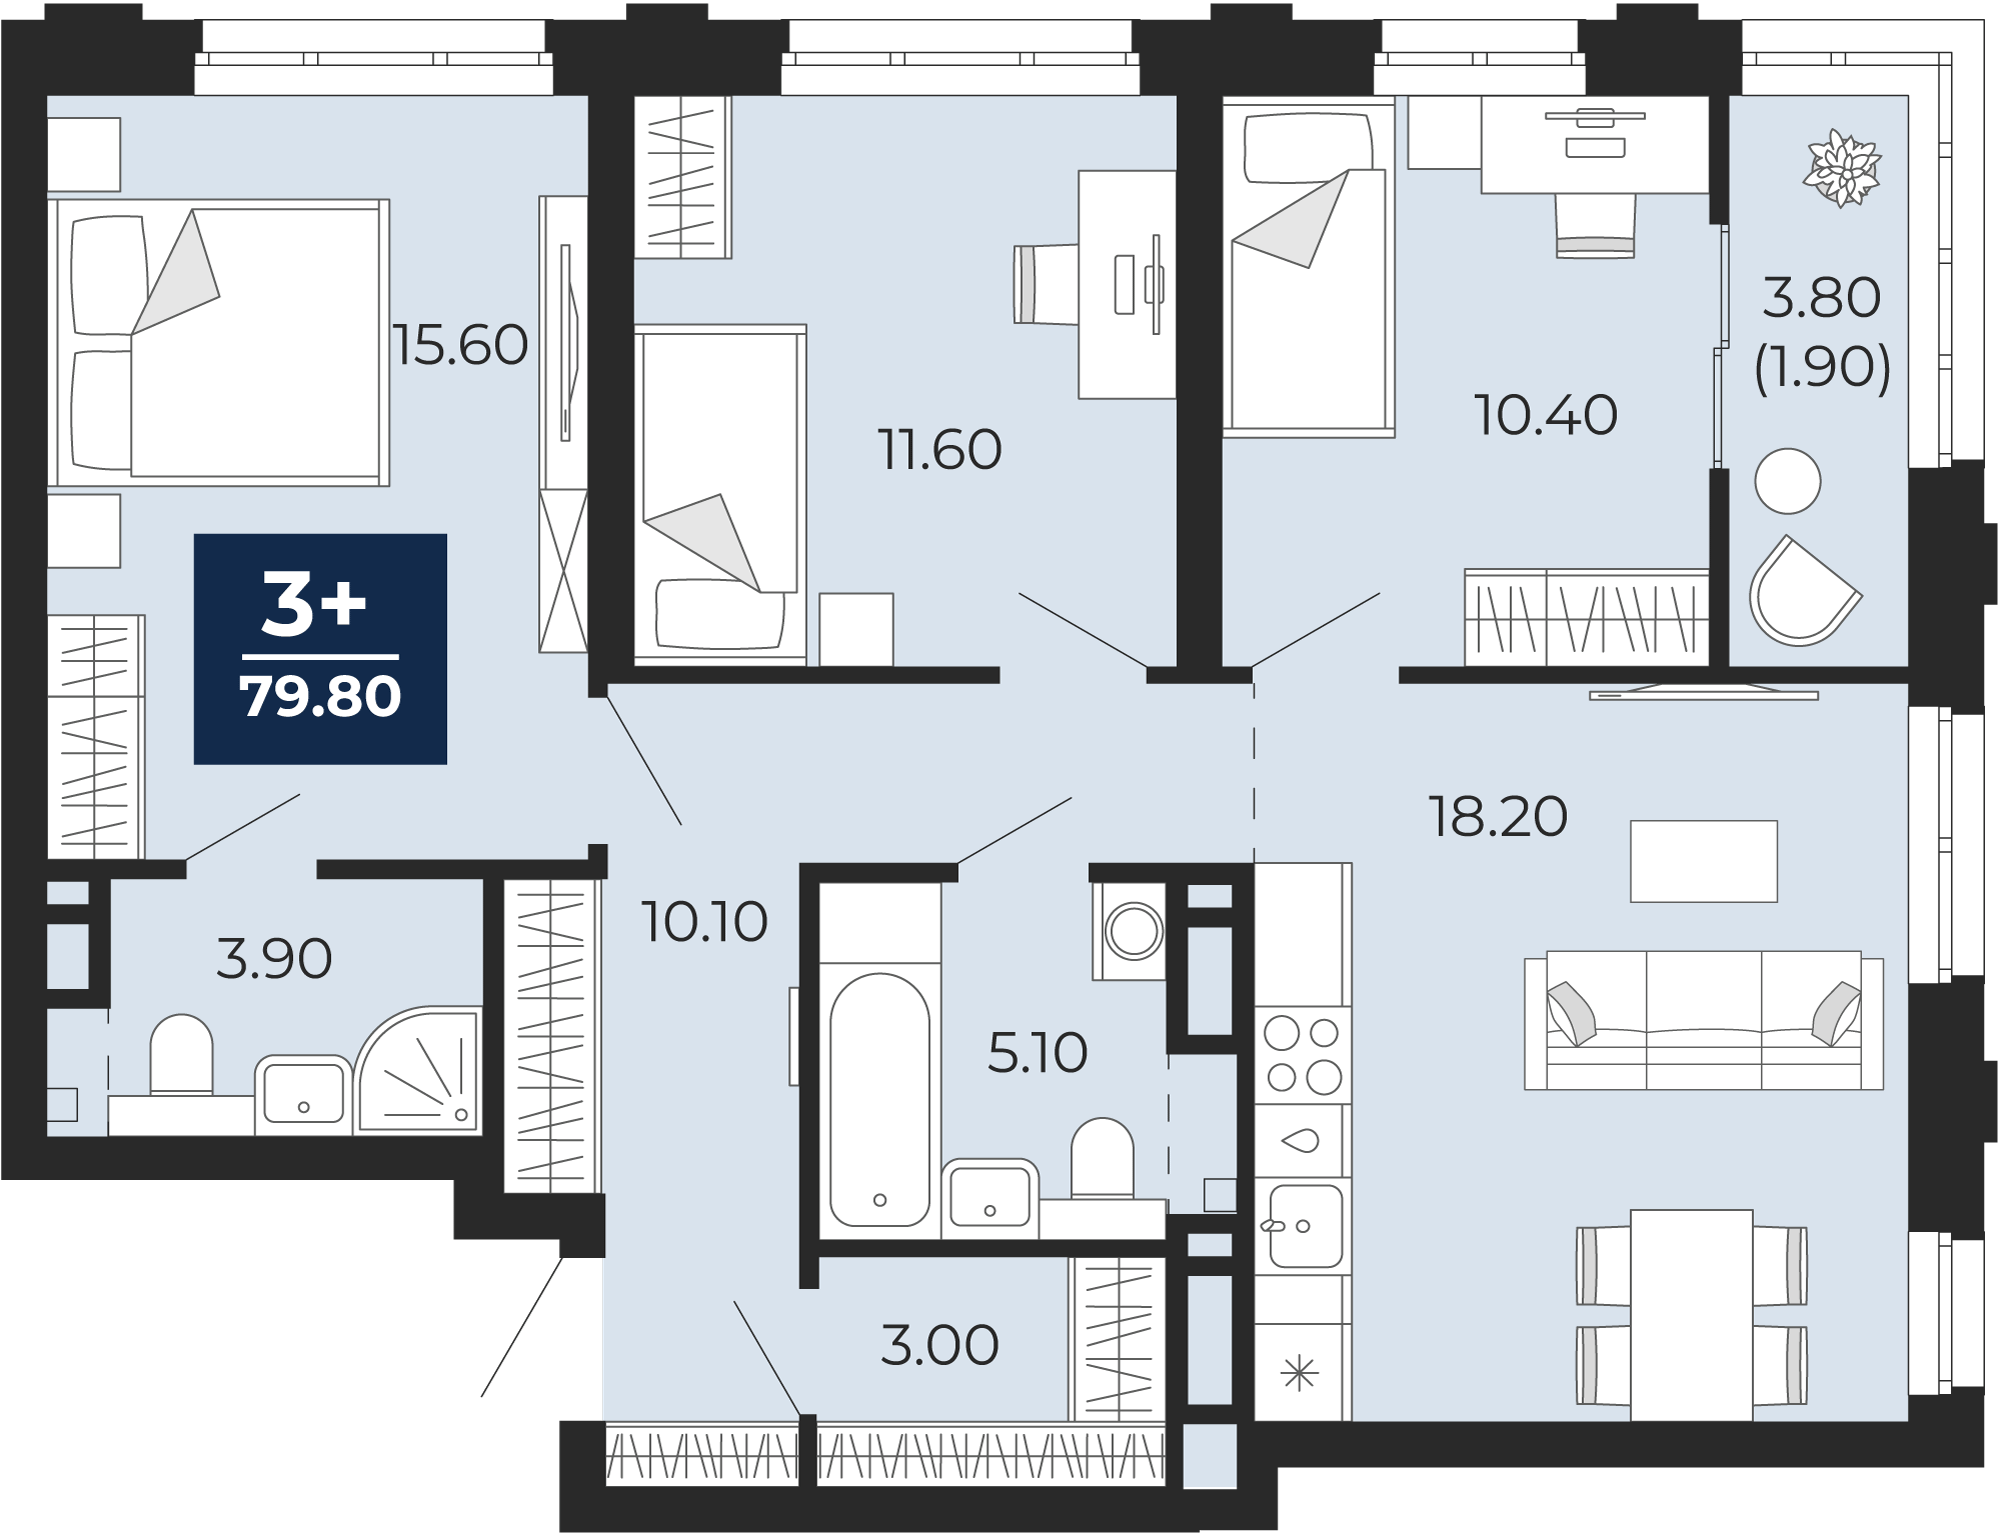 Квартира № 307, 3-комнатная, 79.8 кв. м, 10 этаж